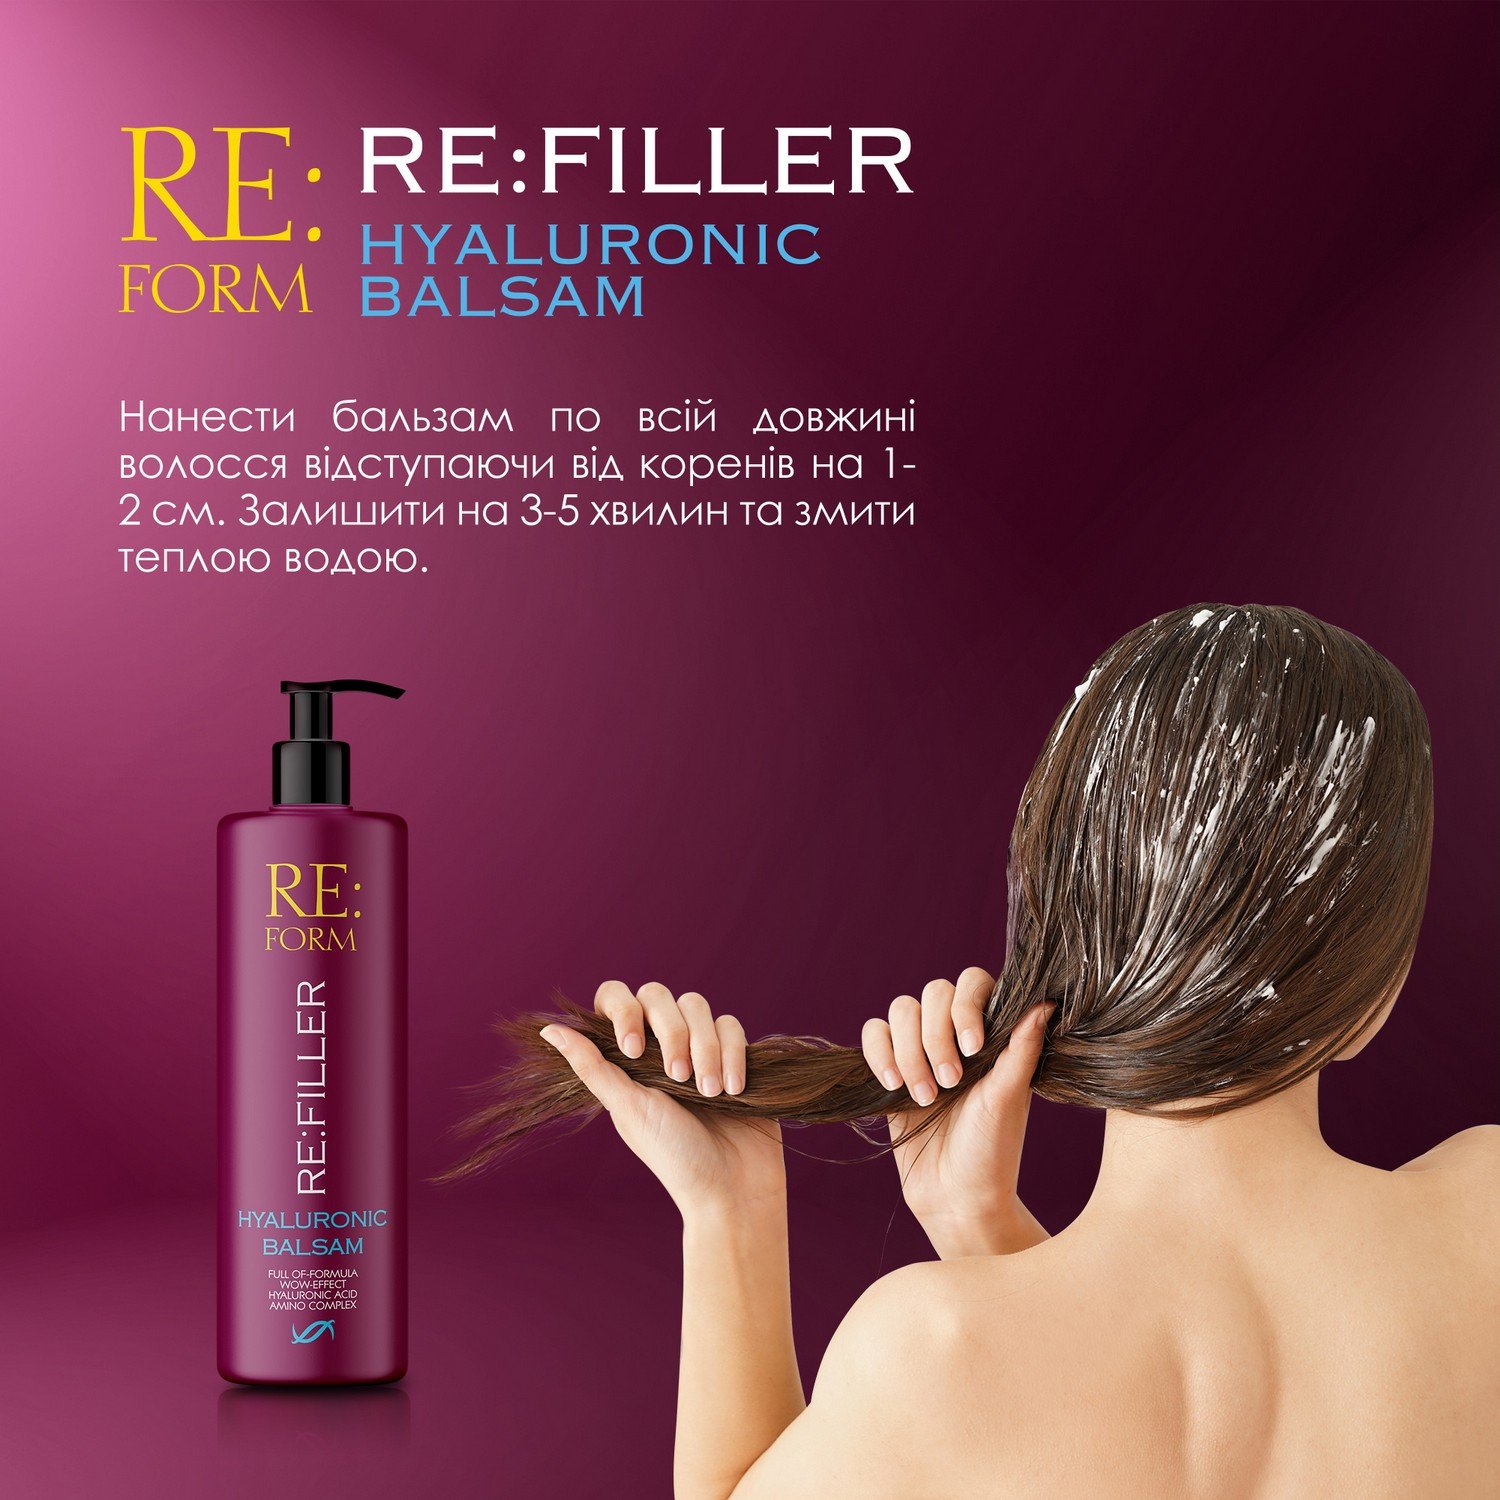 Гиалуроновый бальзам Re:form Re:filler Объем и увлажнение волос, 400 мл - фото 6